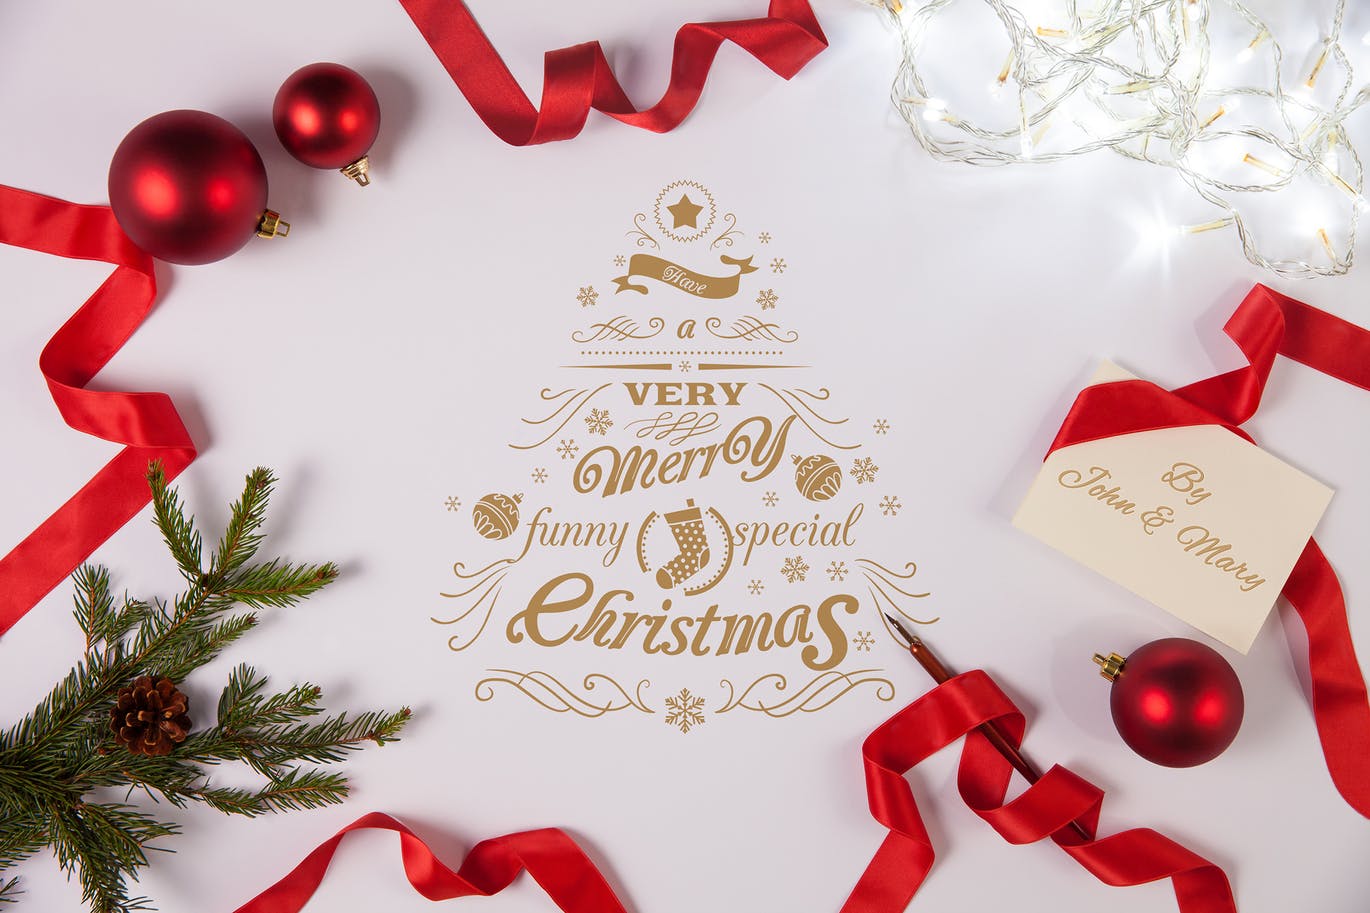 简约优雅风格圣诞节贺卡设计图样机16设计网精选模板v2 Clean and Elegant Christmas Greetings Mockups #2插图